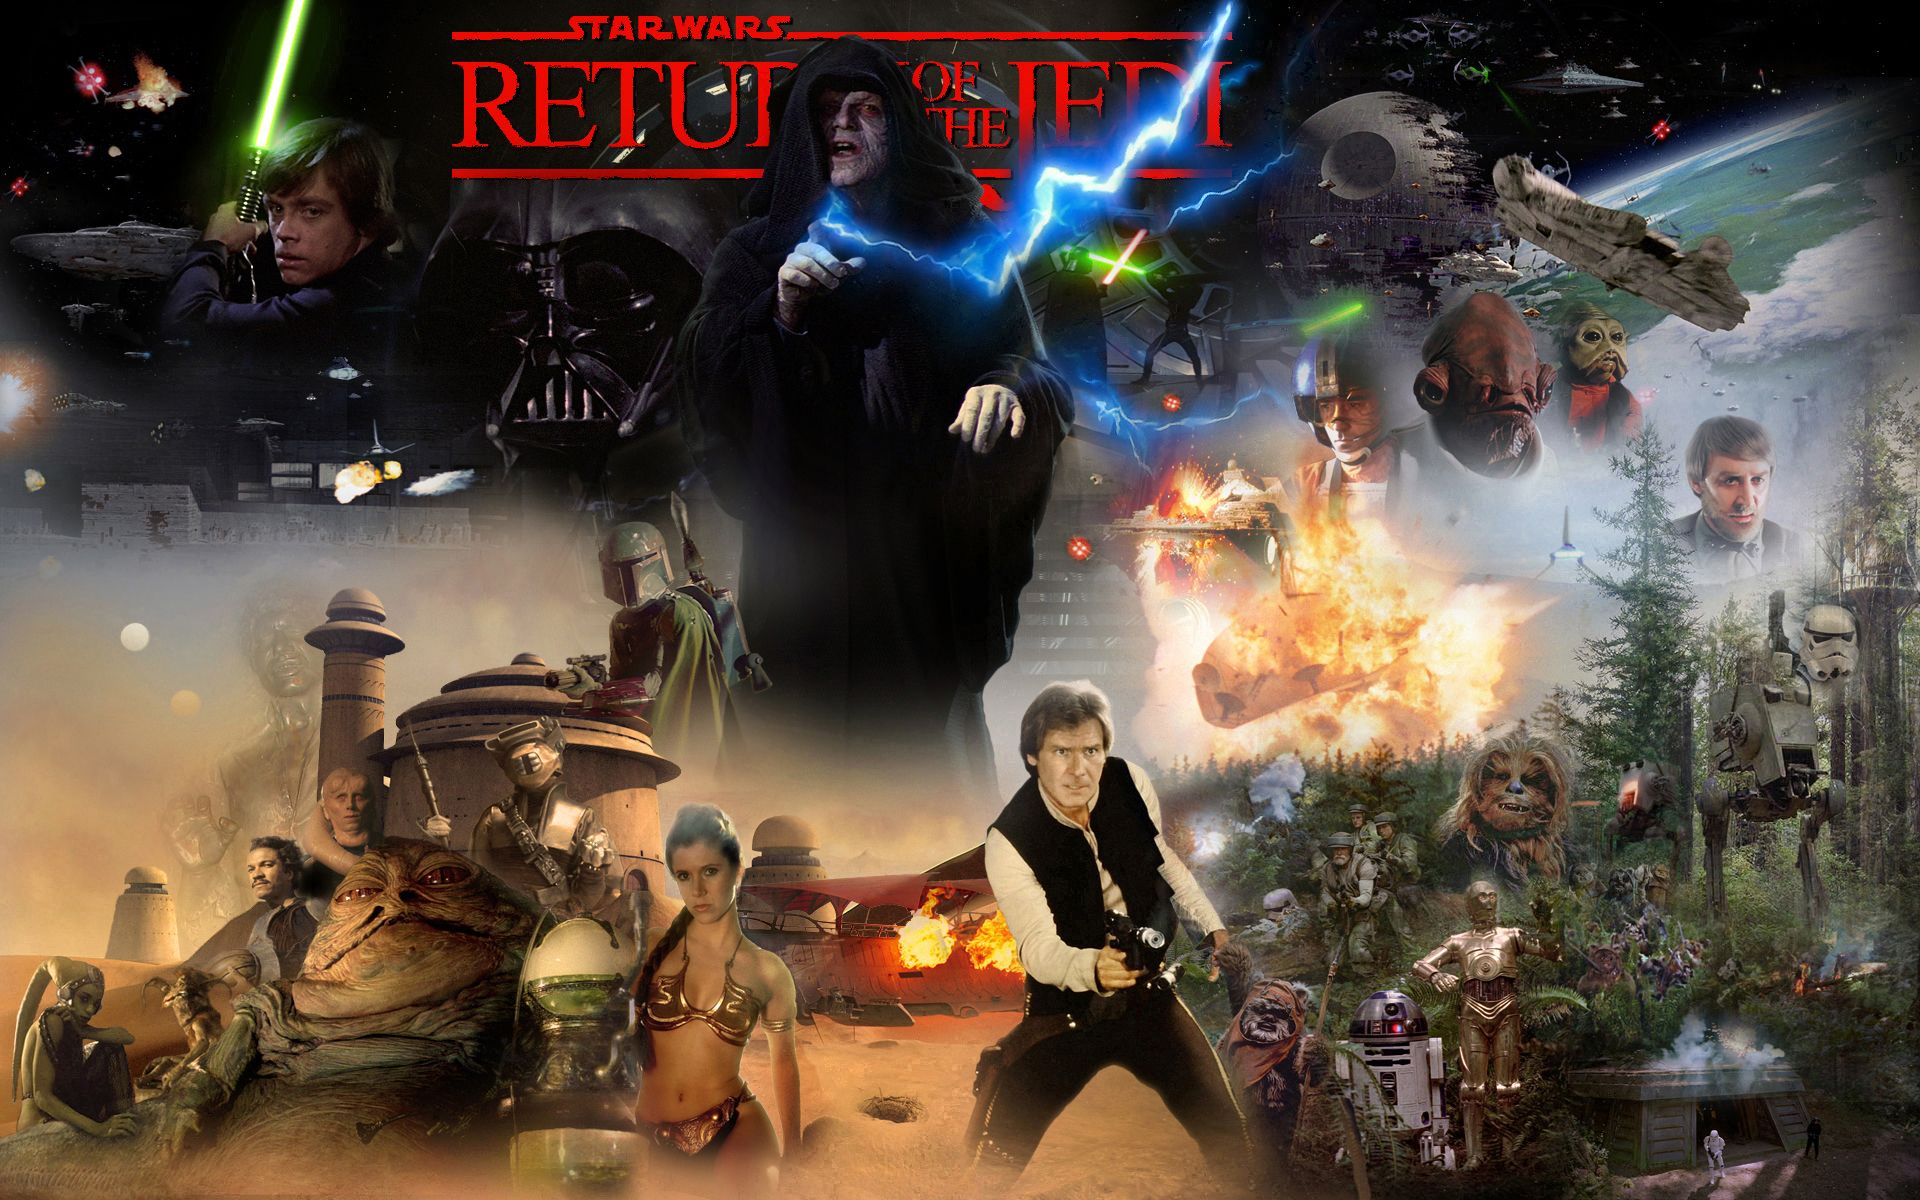 Star Wars Episode VI - Return Of The Jedi by 1darthvader on DeviantArt